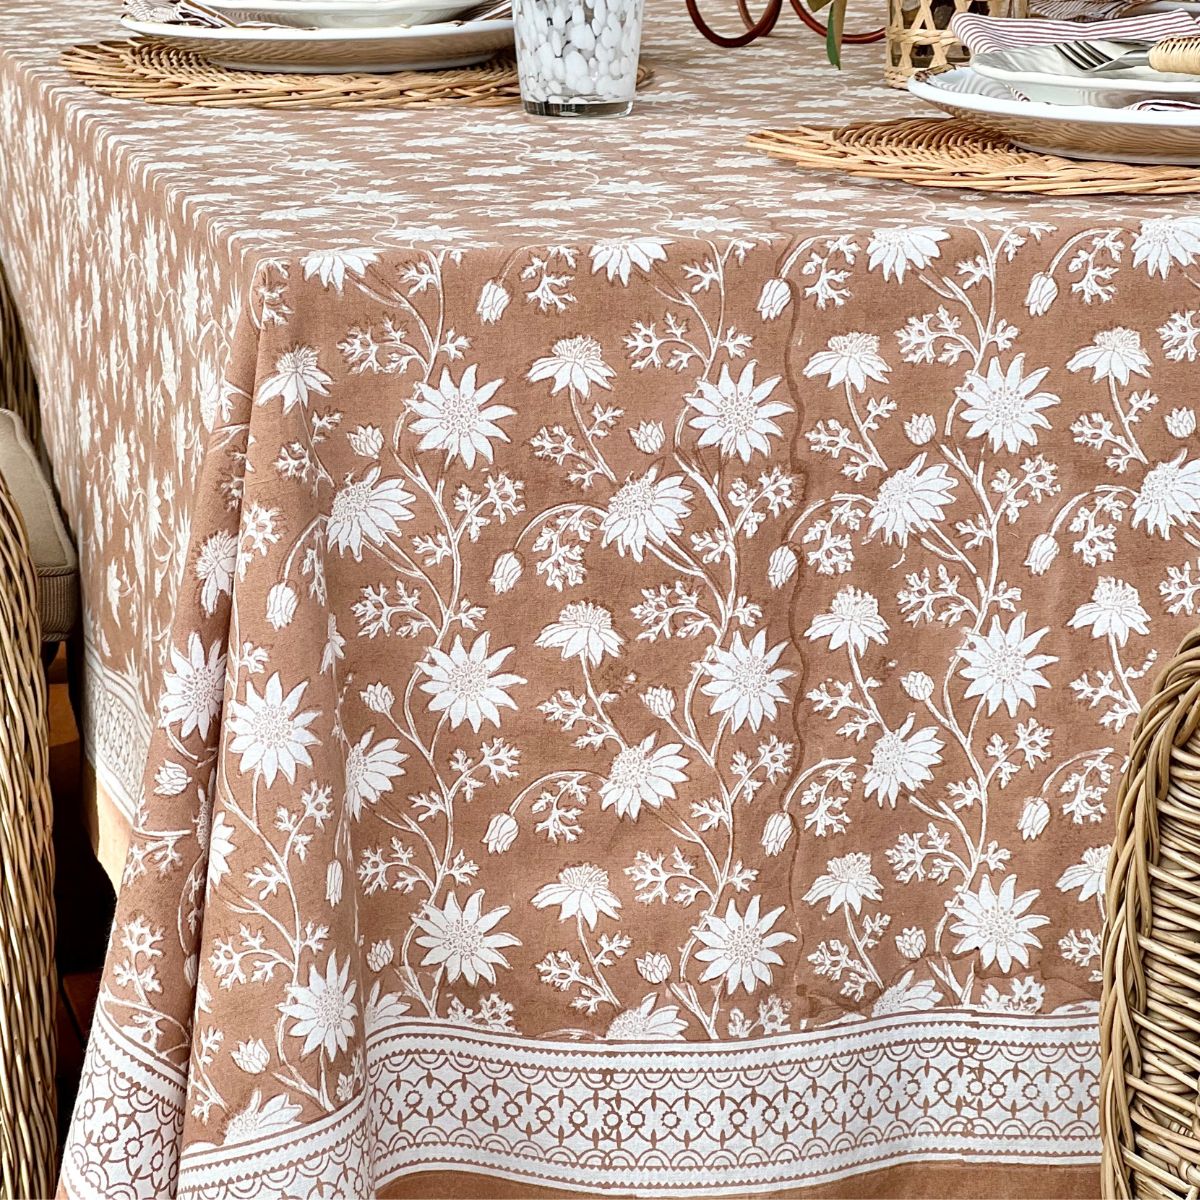 Flannel flower dark brown Tablecloth ©